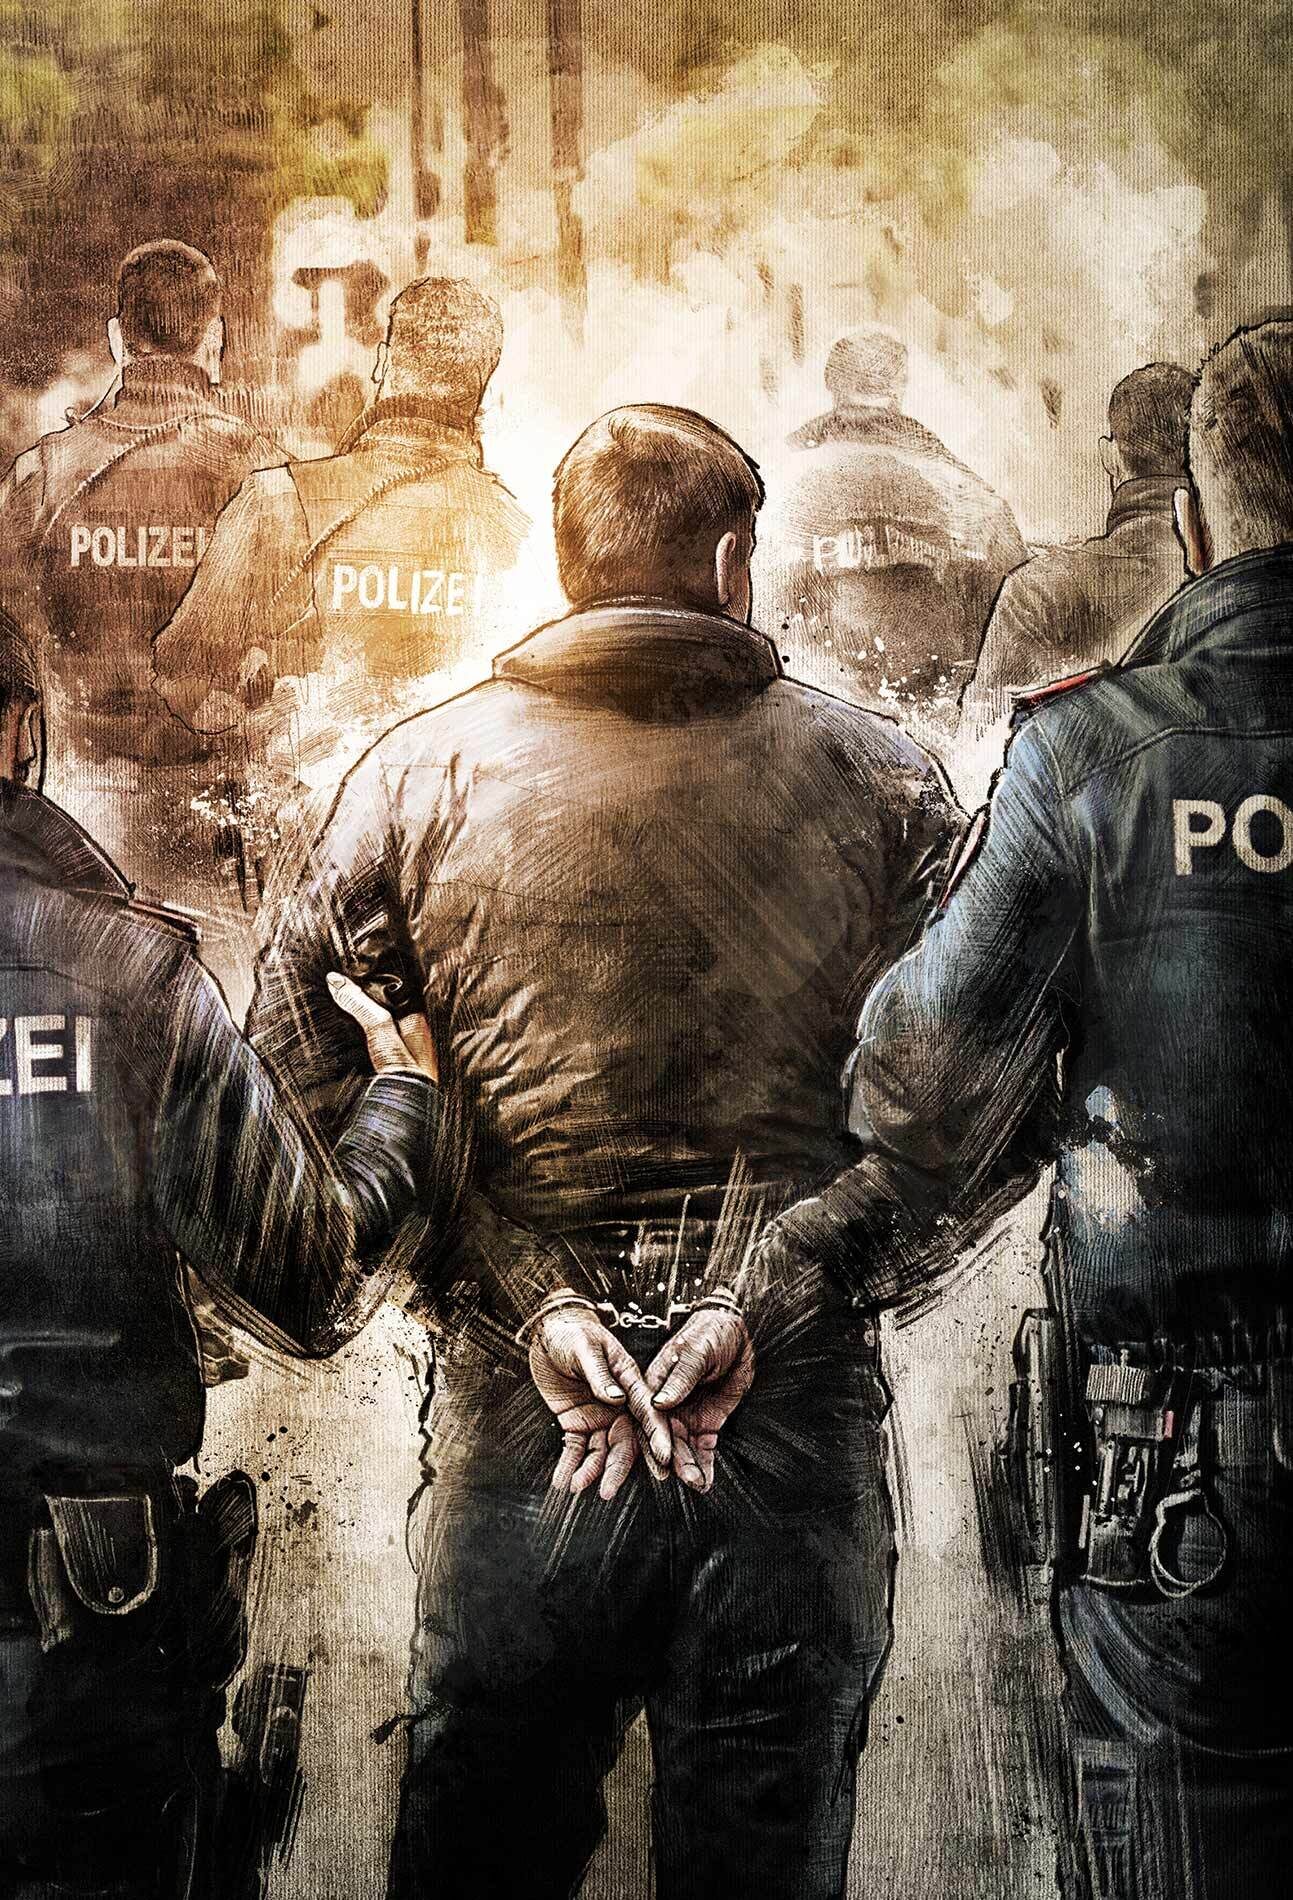 Illustration polizei verhaftung handschellen arrestment - Kornel Illustration | Kornel Stadler portfolio